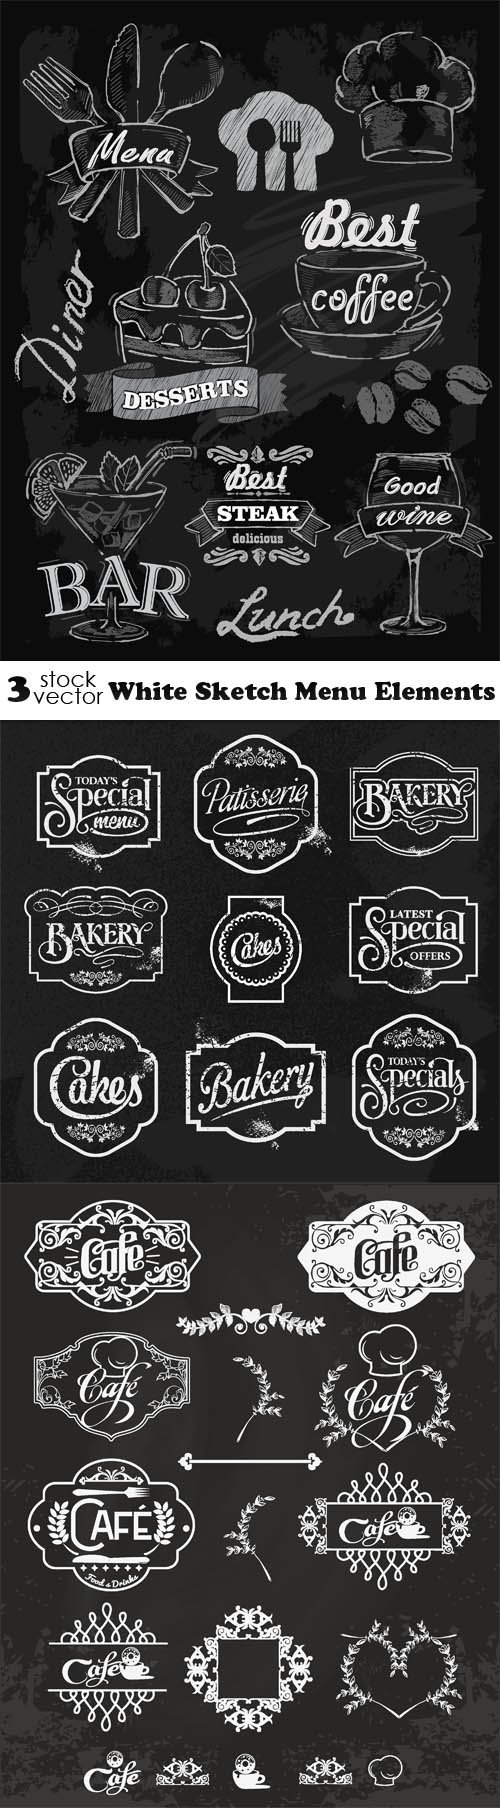 Vectors - White Sketch Menu Elements